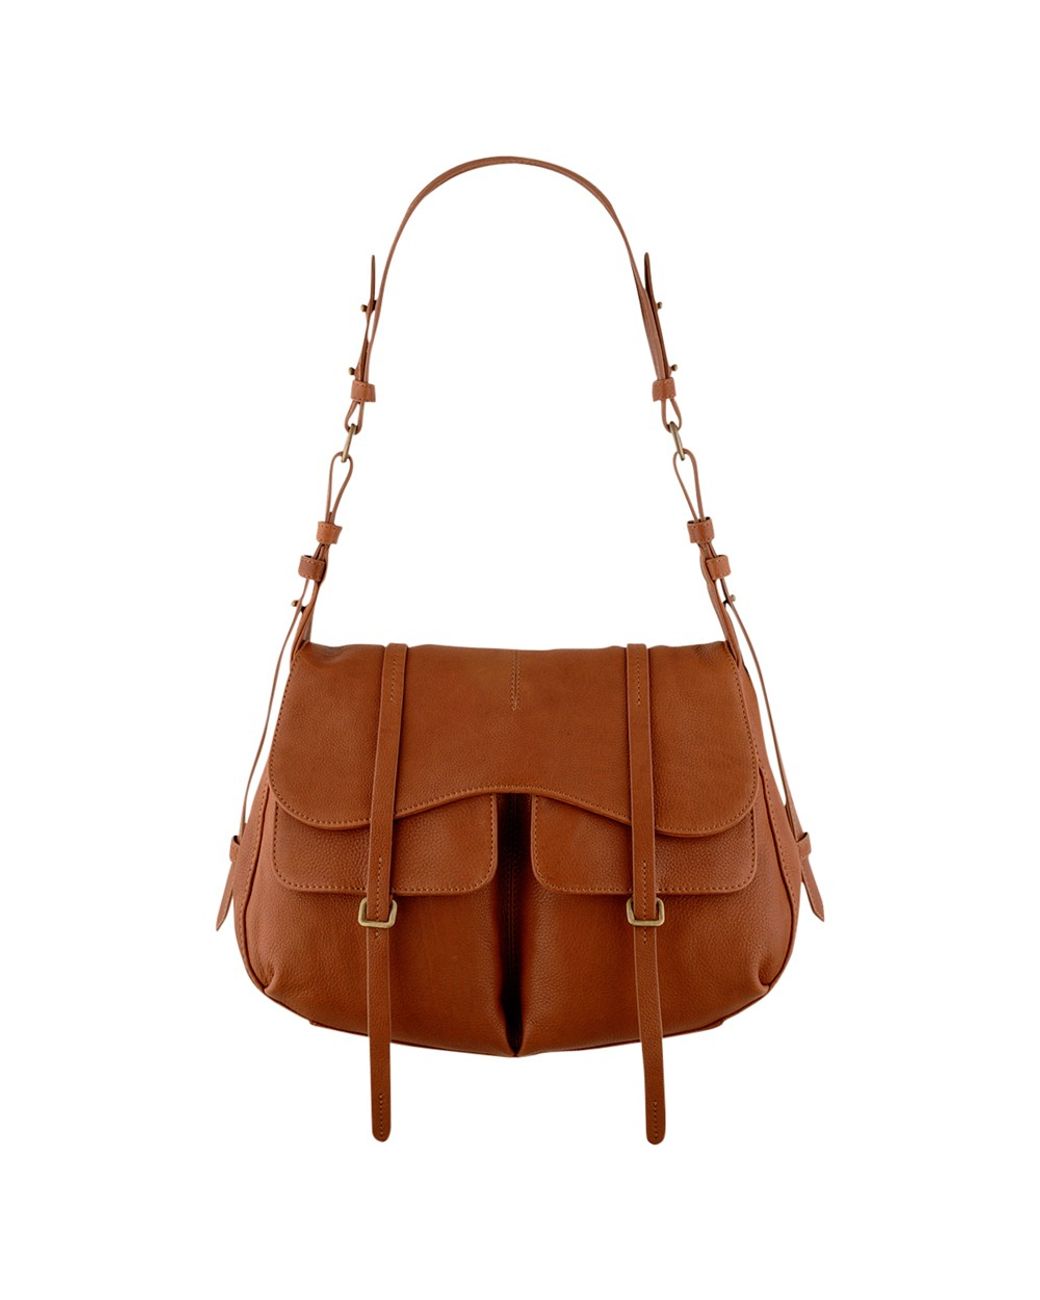 Radley Grosvenor Large Leather Shoulder Handbag in Brown | Lyst UK